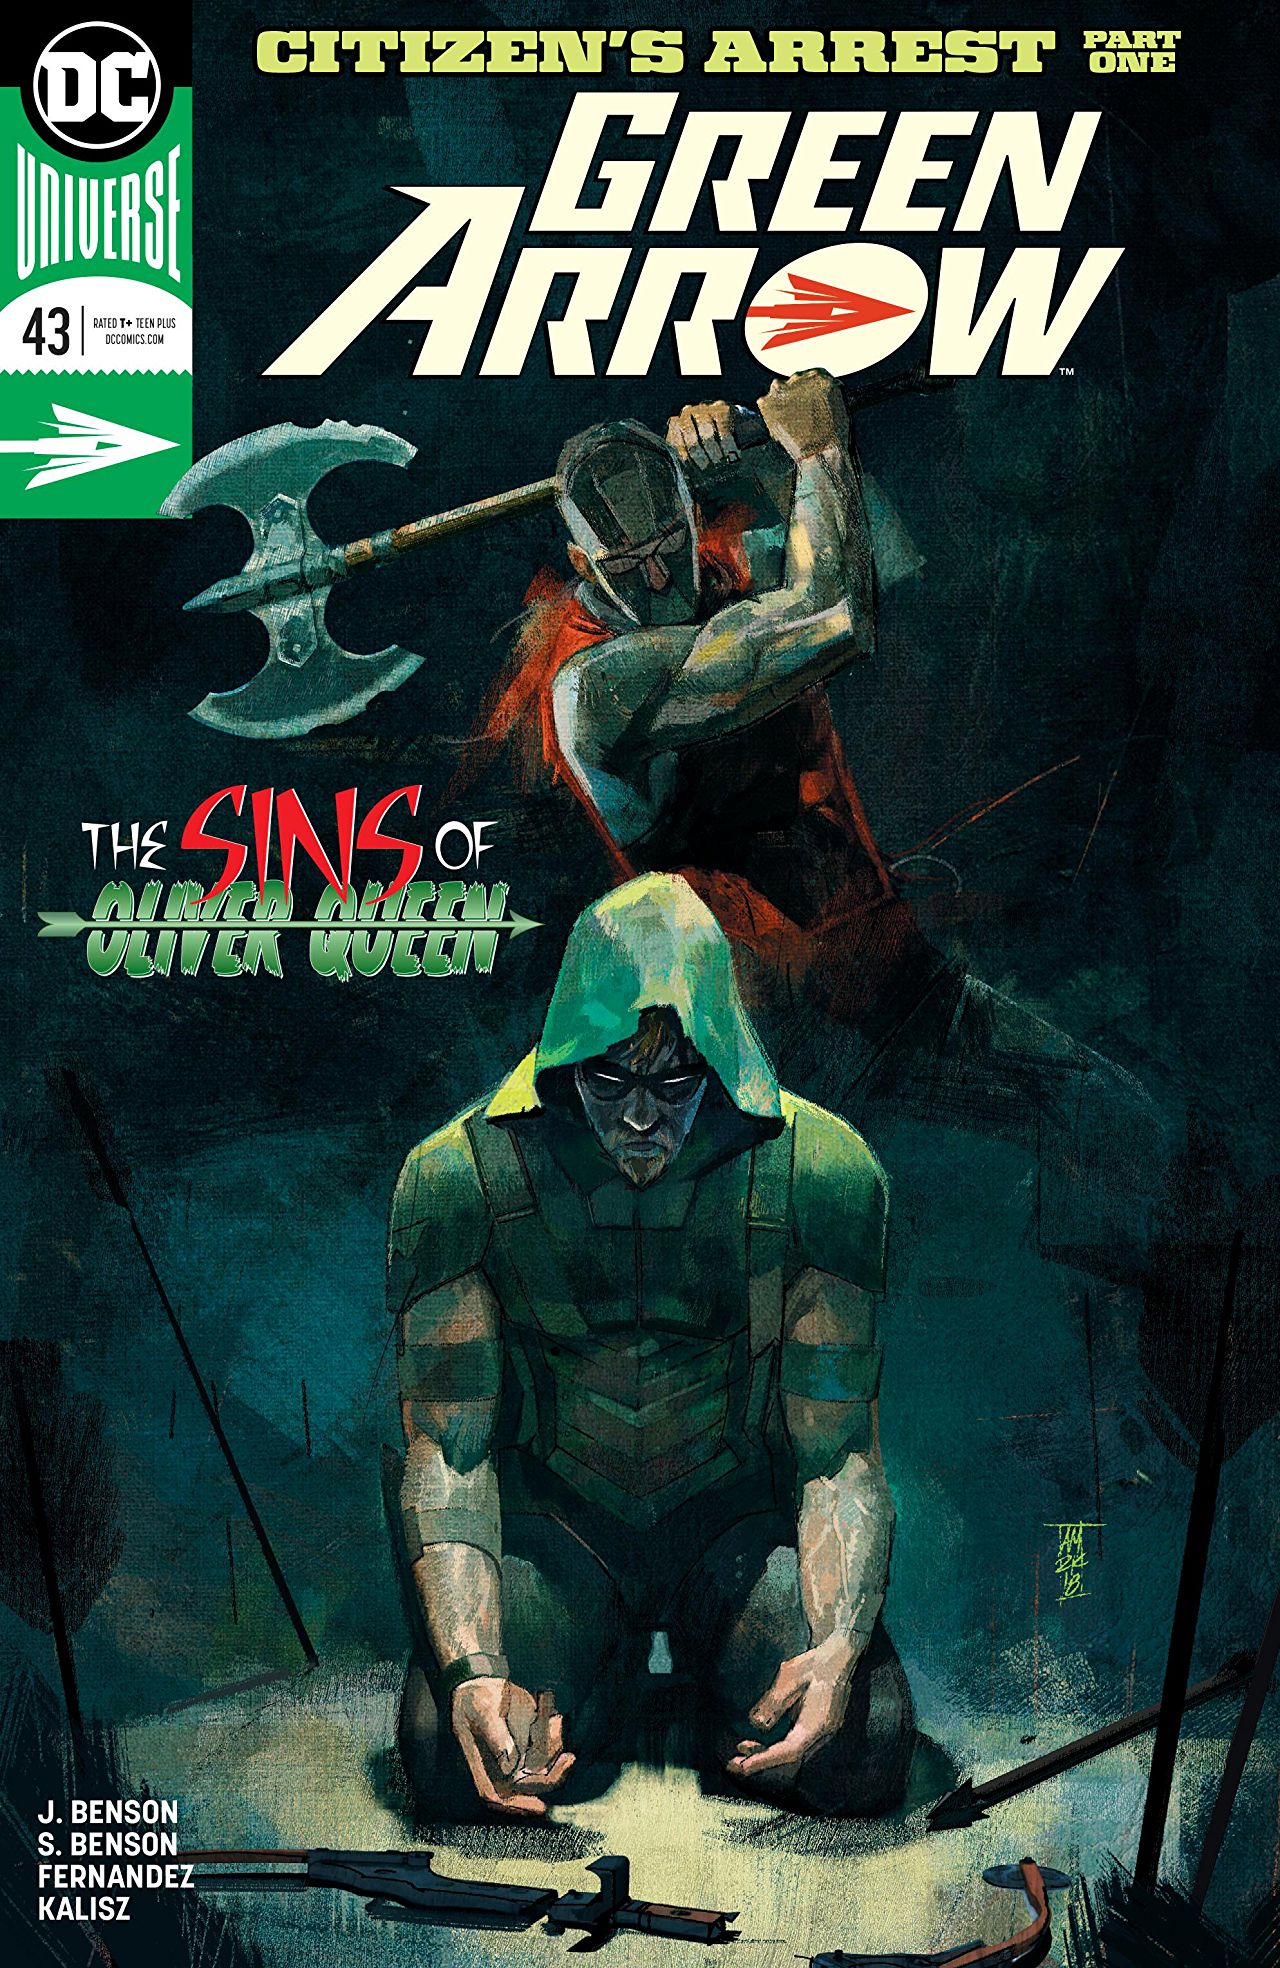 La couverture de Green Arrow #43, premier chapitre du run des sœurs Benson.